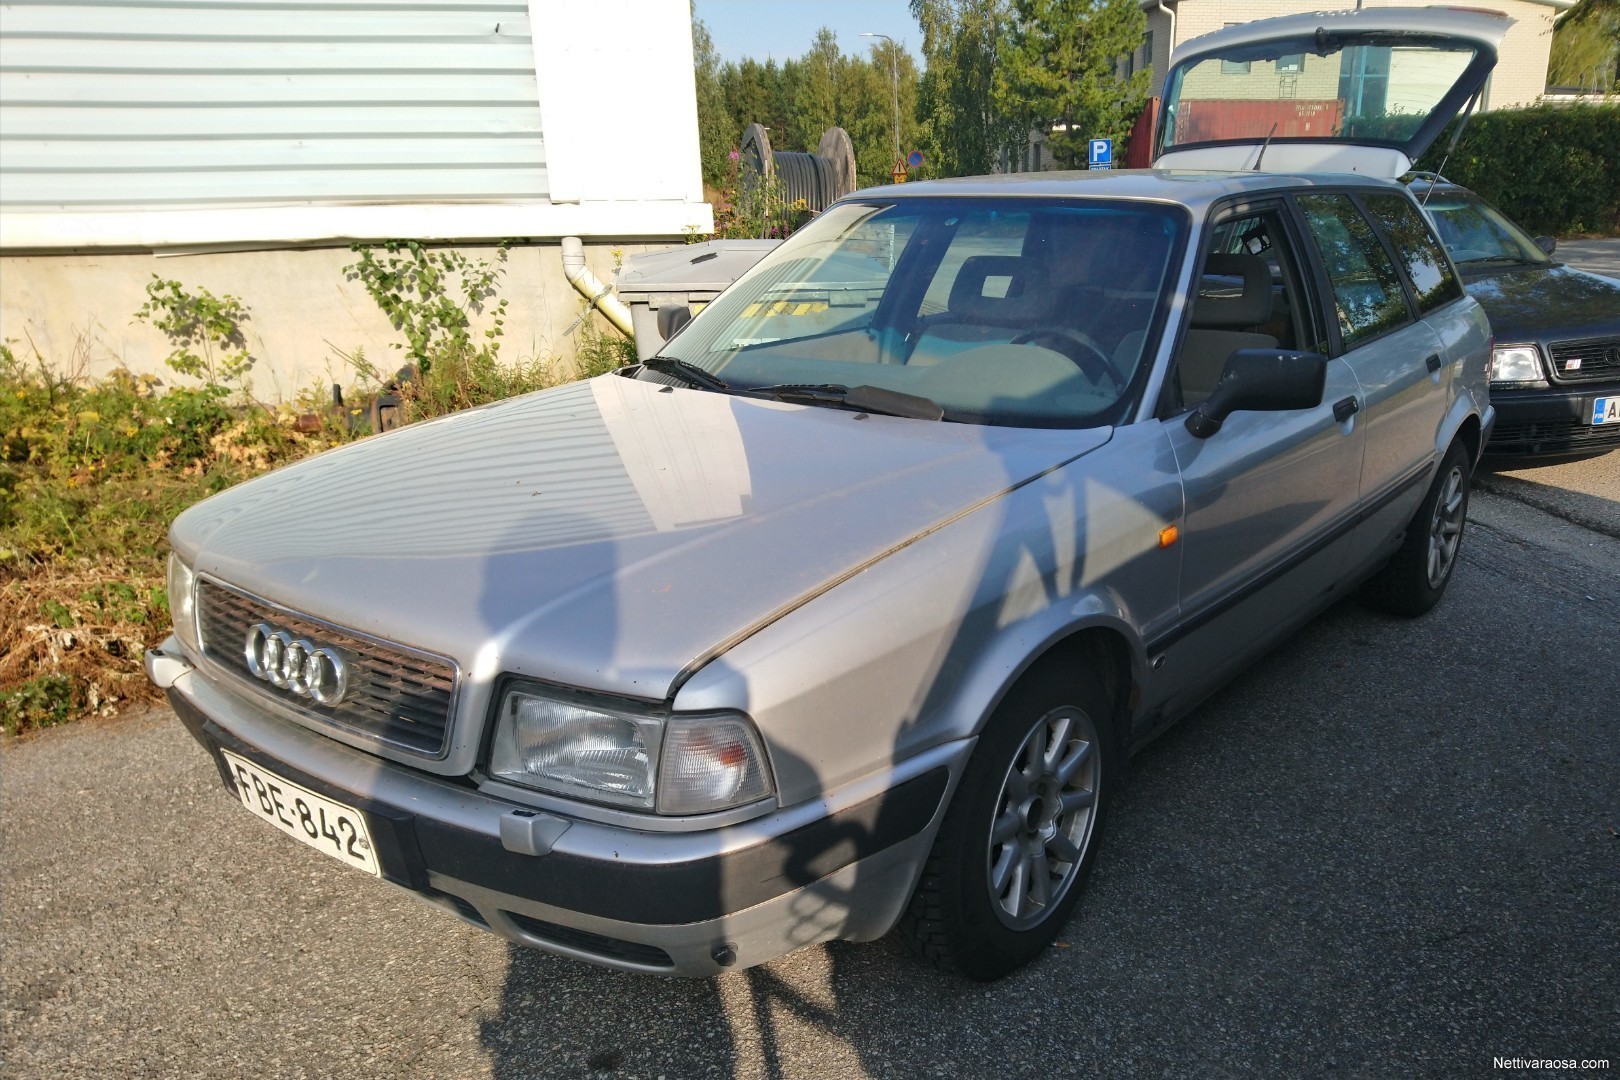 Nettivaraosa - Audi 80 1993 - Auton varaosat - Nettivaraosa